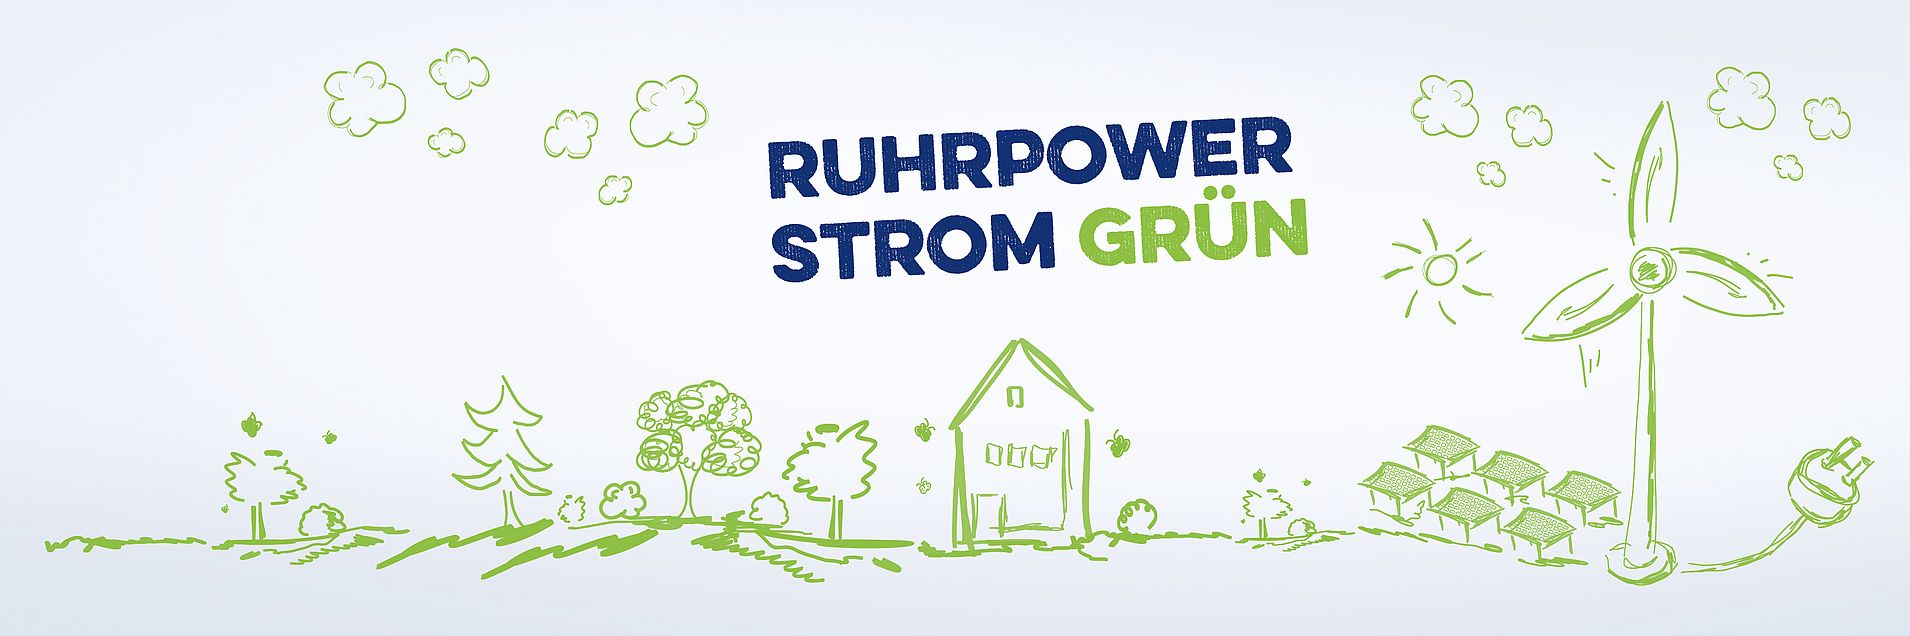 Karikatur in grün; gezeichnet ist eine Wiese, ein Haus, eine Photovoltaikanlage und ein Windrad als Symbolbild für den modernen Stromtarif Ruhrpower Strom Grün mit Ökostrom und Preisstabilität.